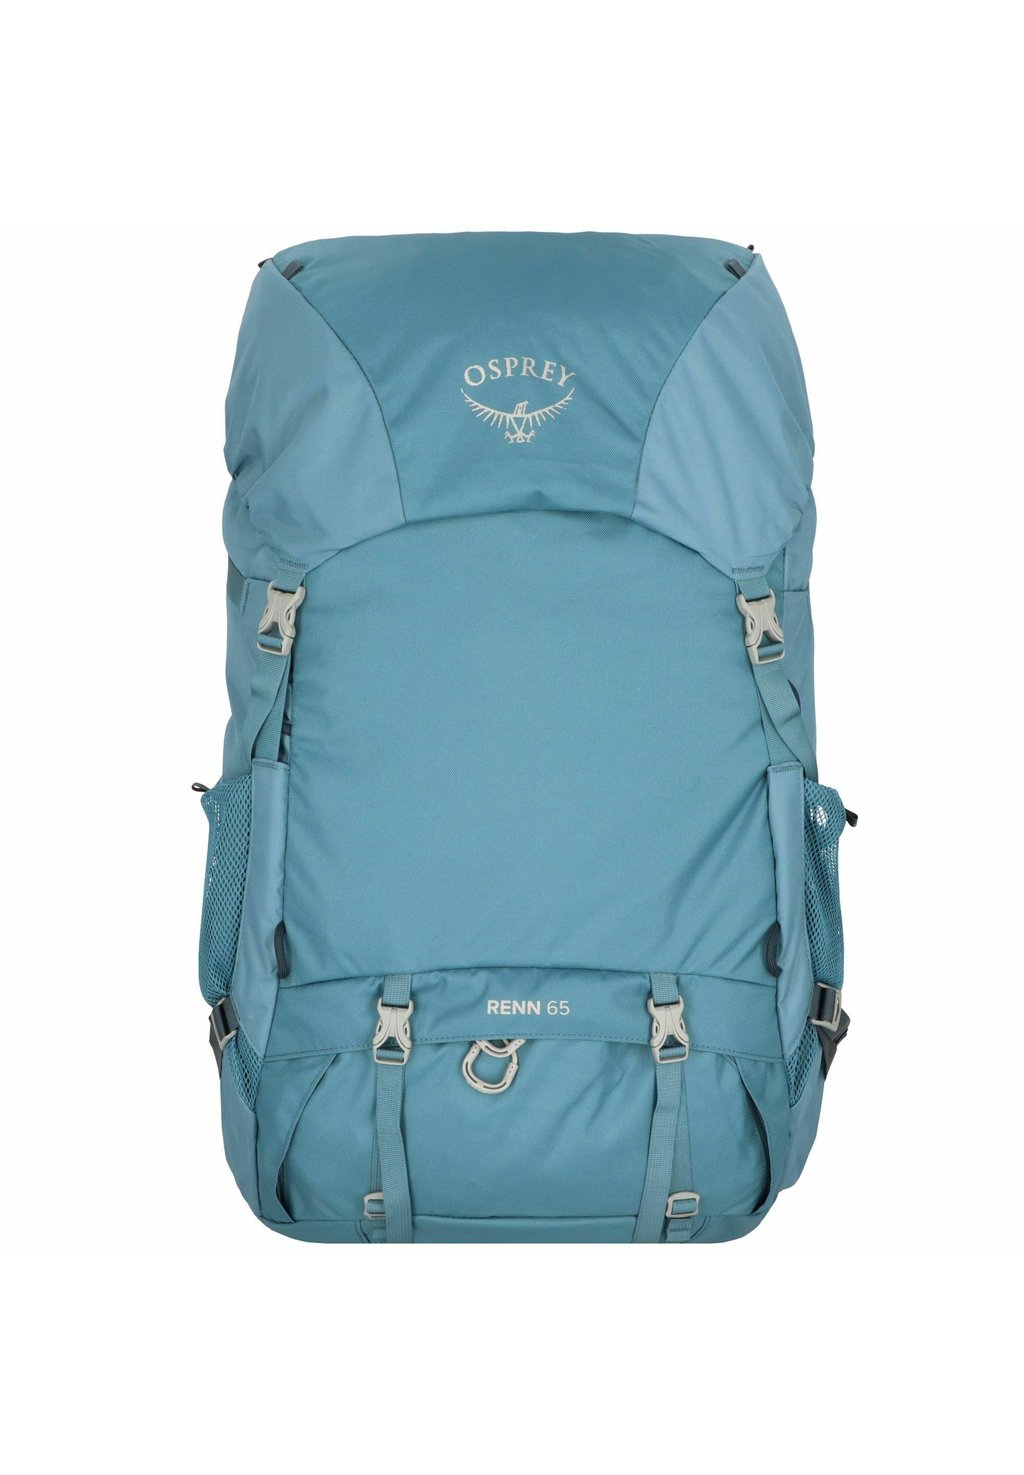 Треккинговый рюкзак RENN 65 Osprey, цвет challenger blue